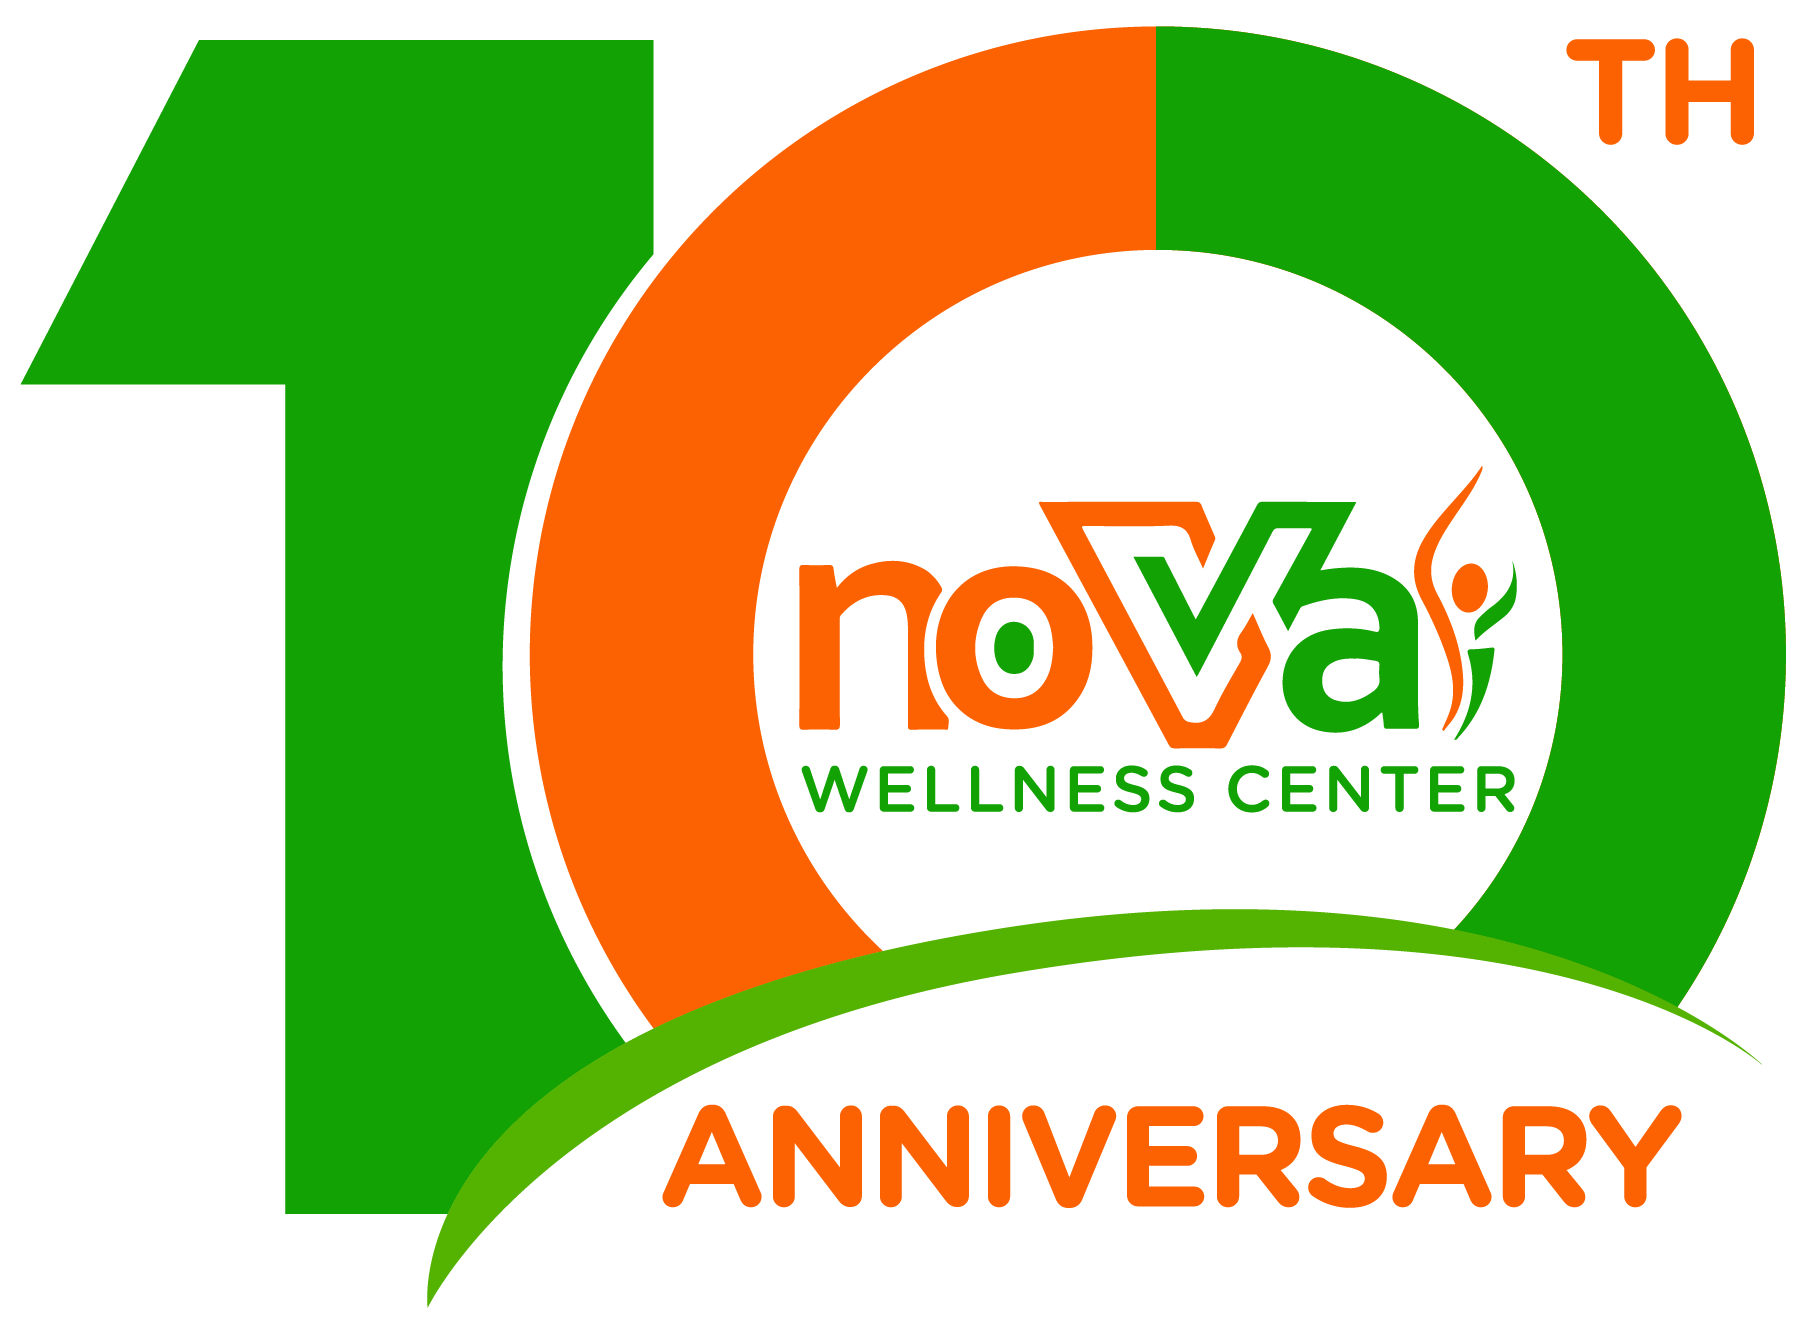 Nova Wellness Center